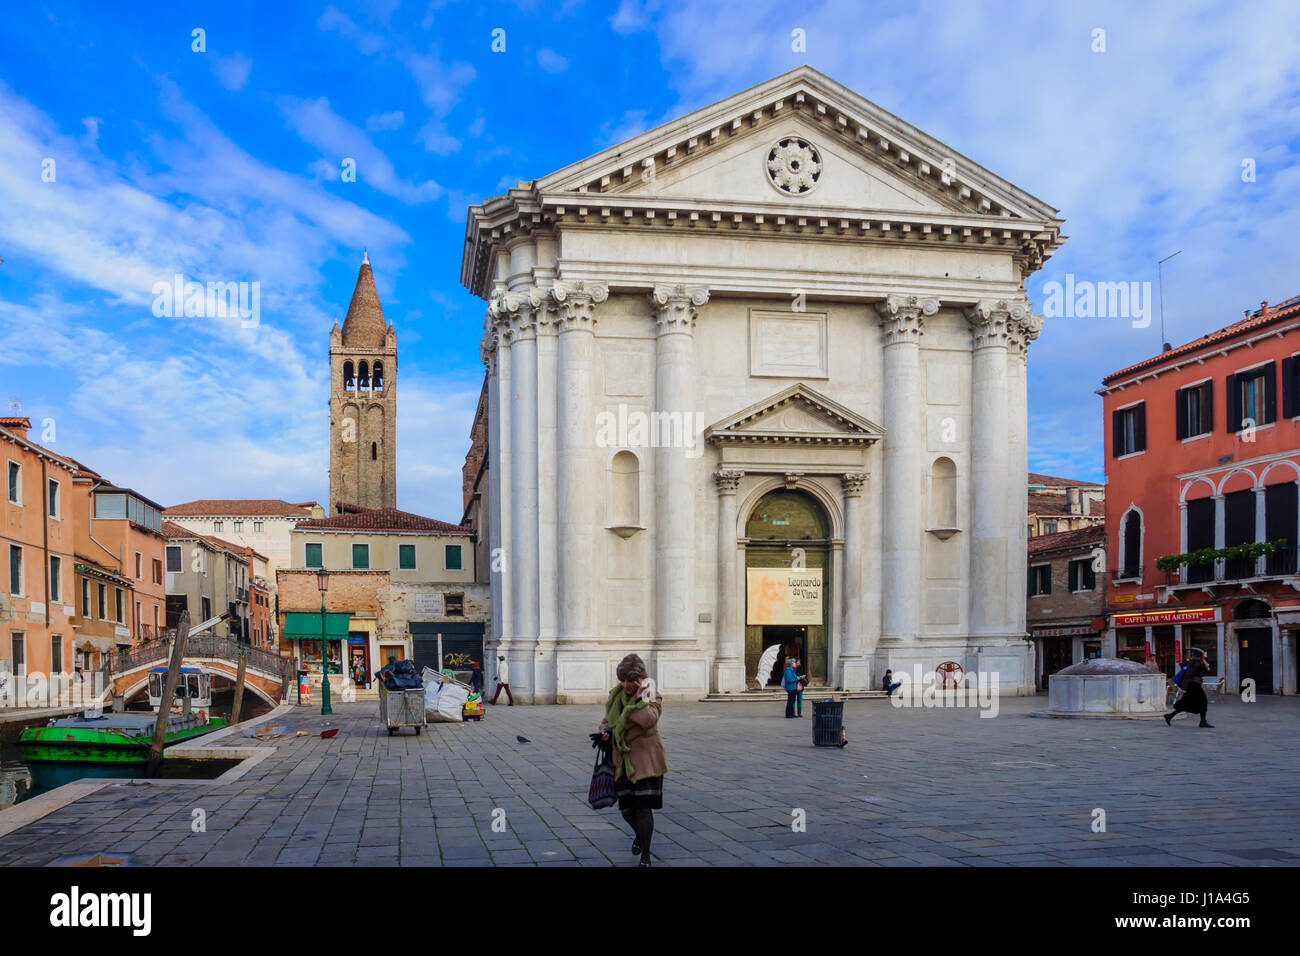 Venise, Italie - DEC 04, 2015 : scène de l'église de San Barnaba, avec les collectivités locales et les touristes, à Venise, Vénétie, Italie Banque D'Images